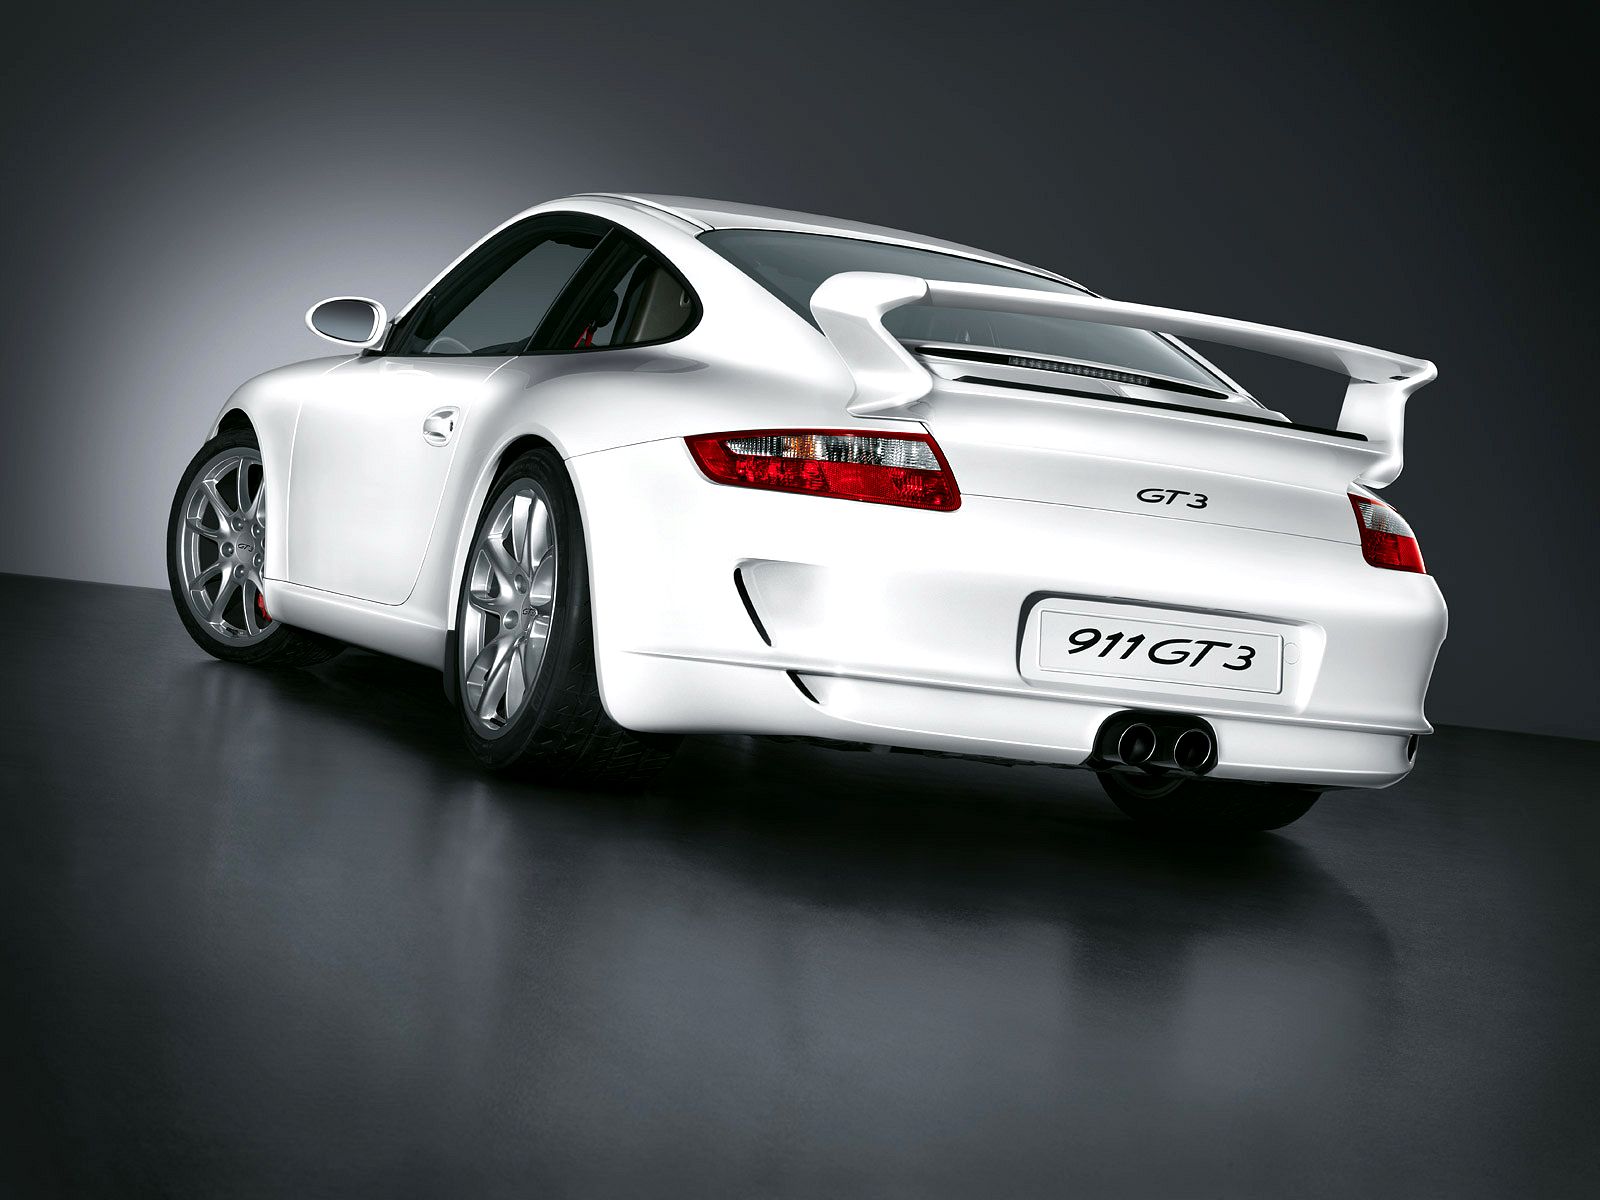 Porsche 911 GT3 Wallpaper | 1600x1200 | ID:613